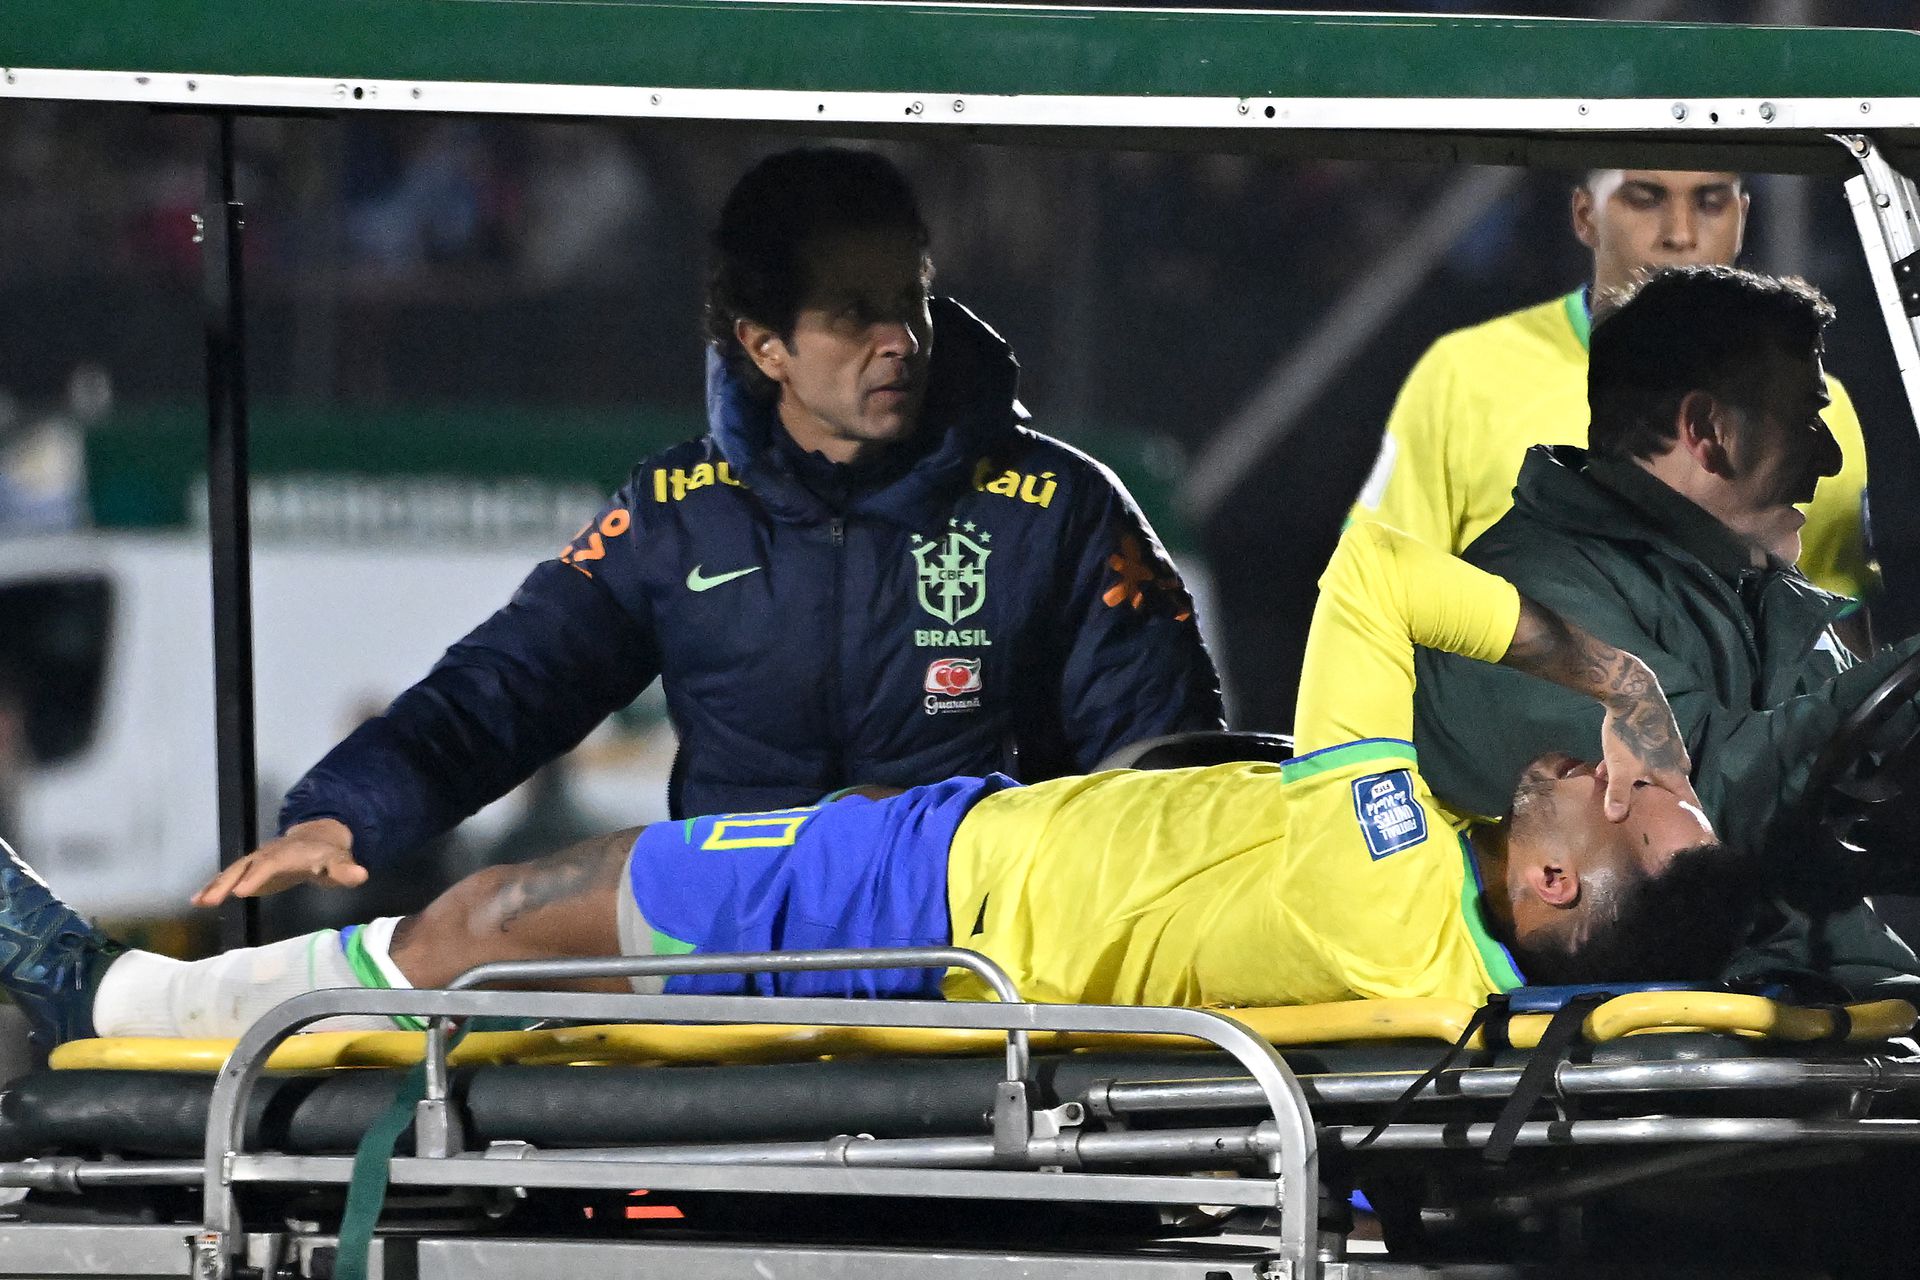 A válogatottnál szenvedett súlyos térdsérülést Neymar.
Fotó: Getty